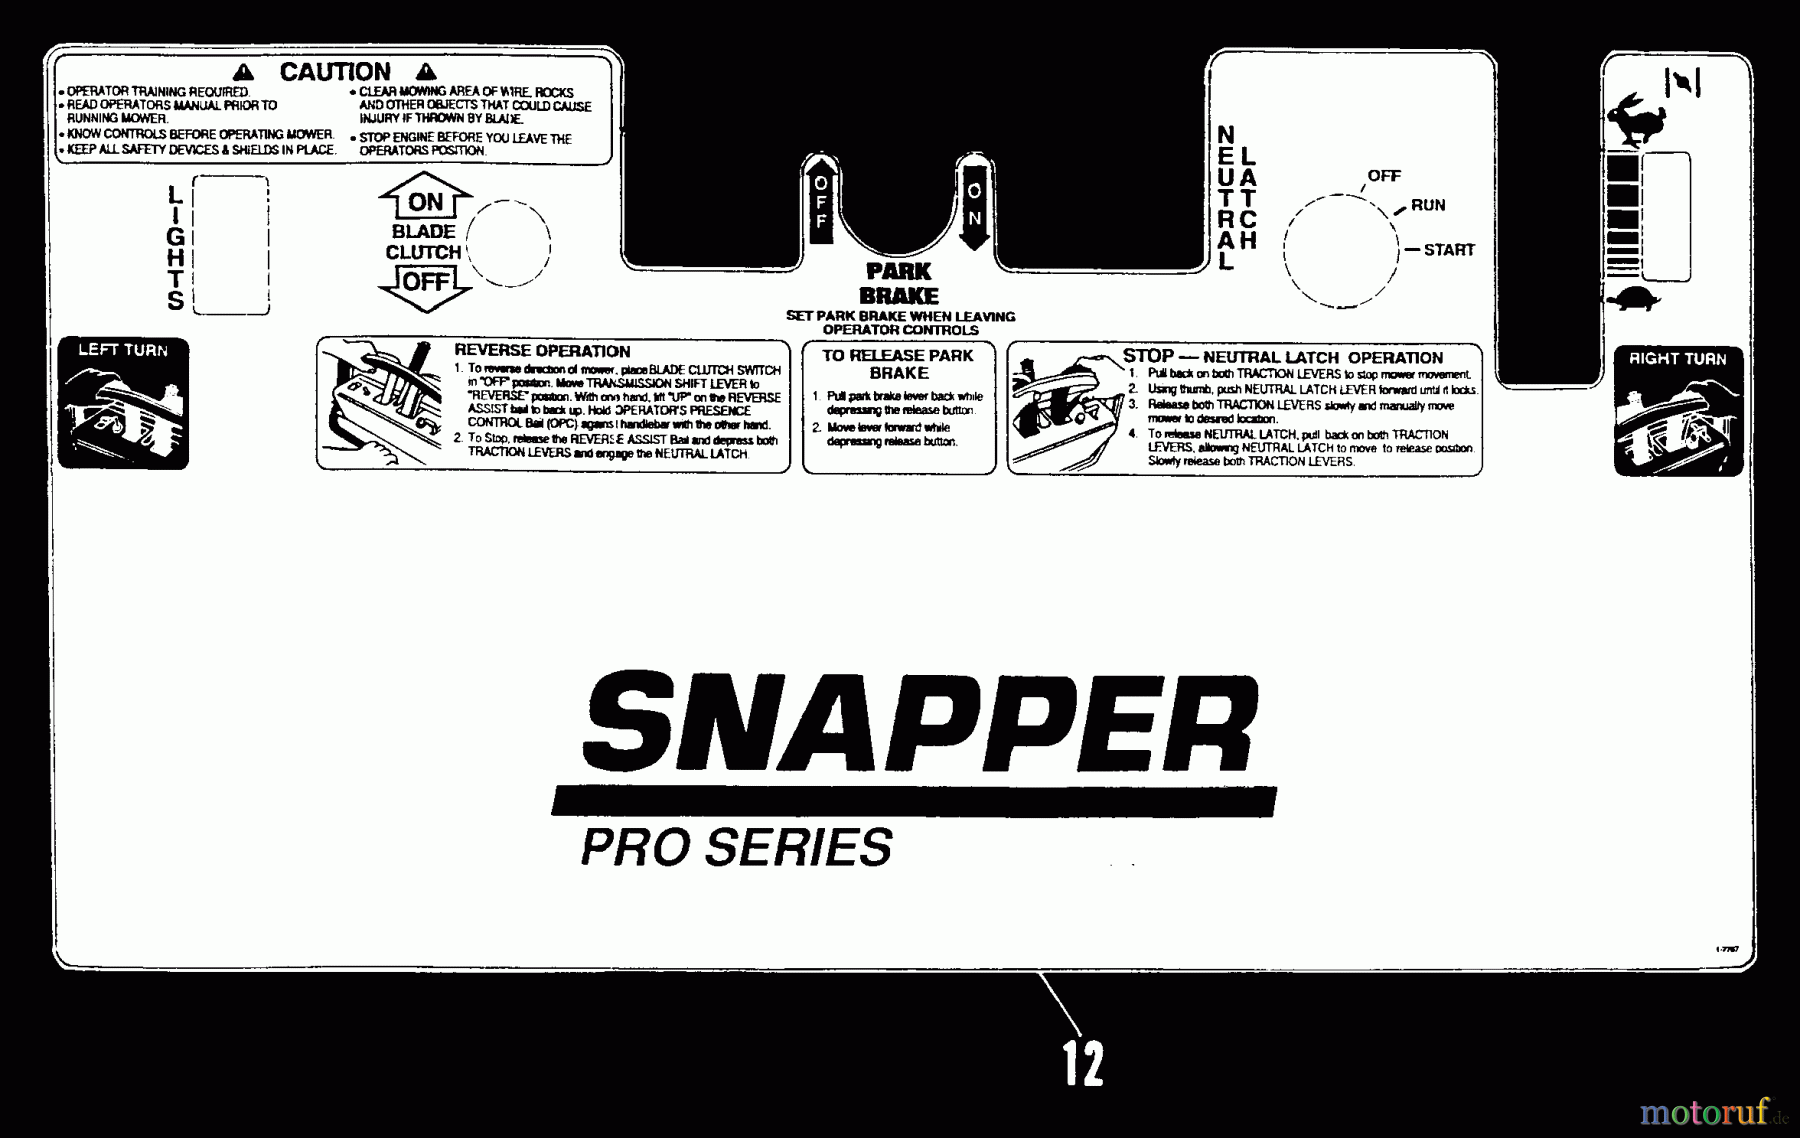  Snapper Rasenmäher für Großflächen PPU180KE - Snapper Wide-Area Walk-Behind Mower, 18 HP, Mid-Size Gear Drive, Series 0 Decal Kit (Part 2)